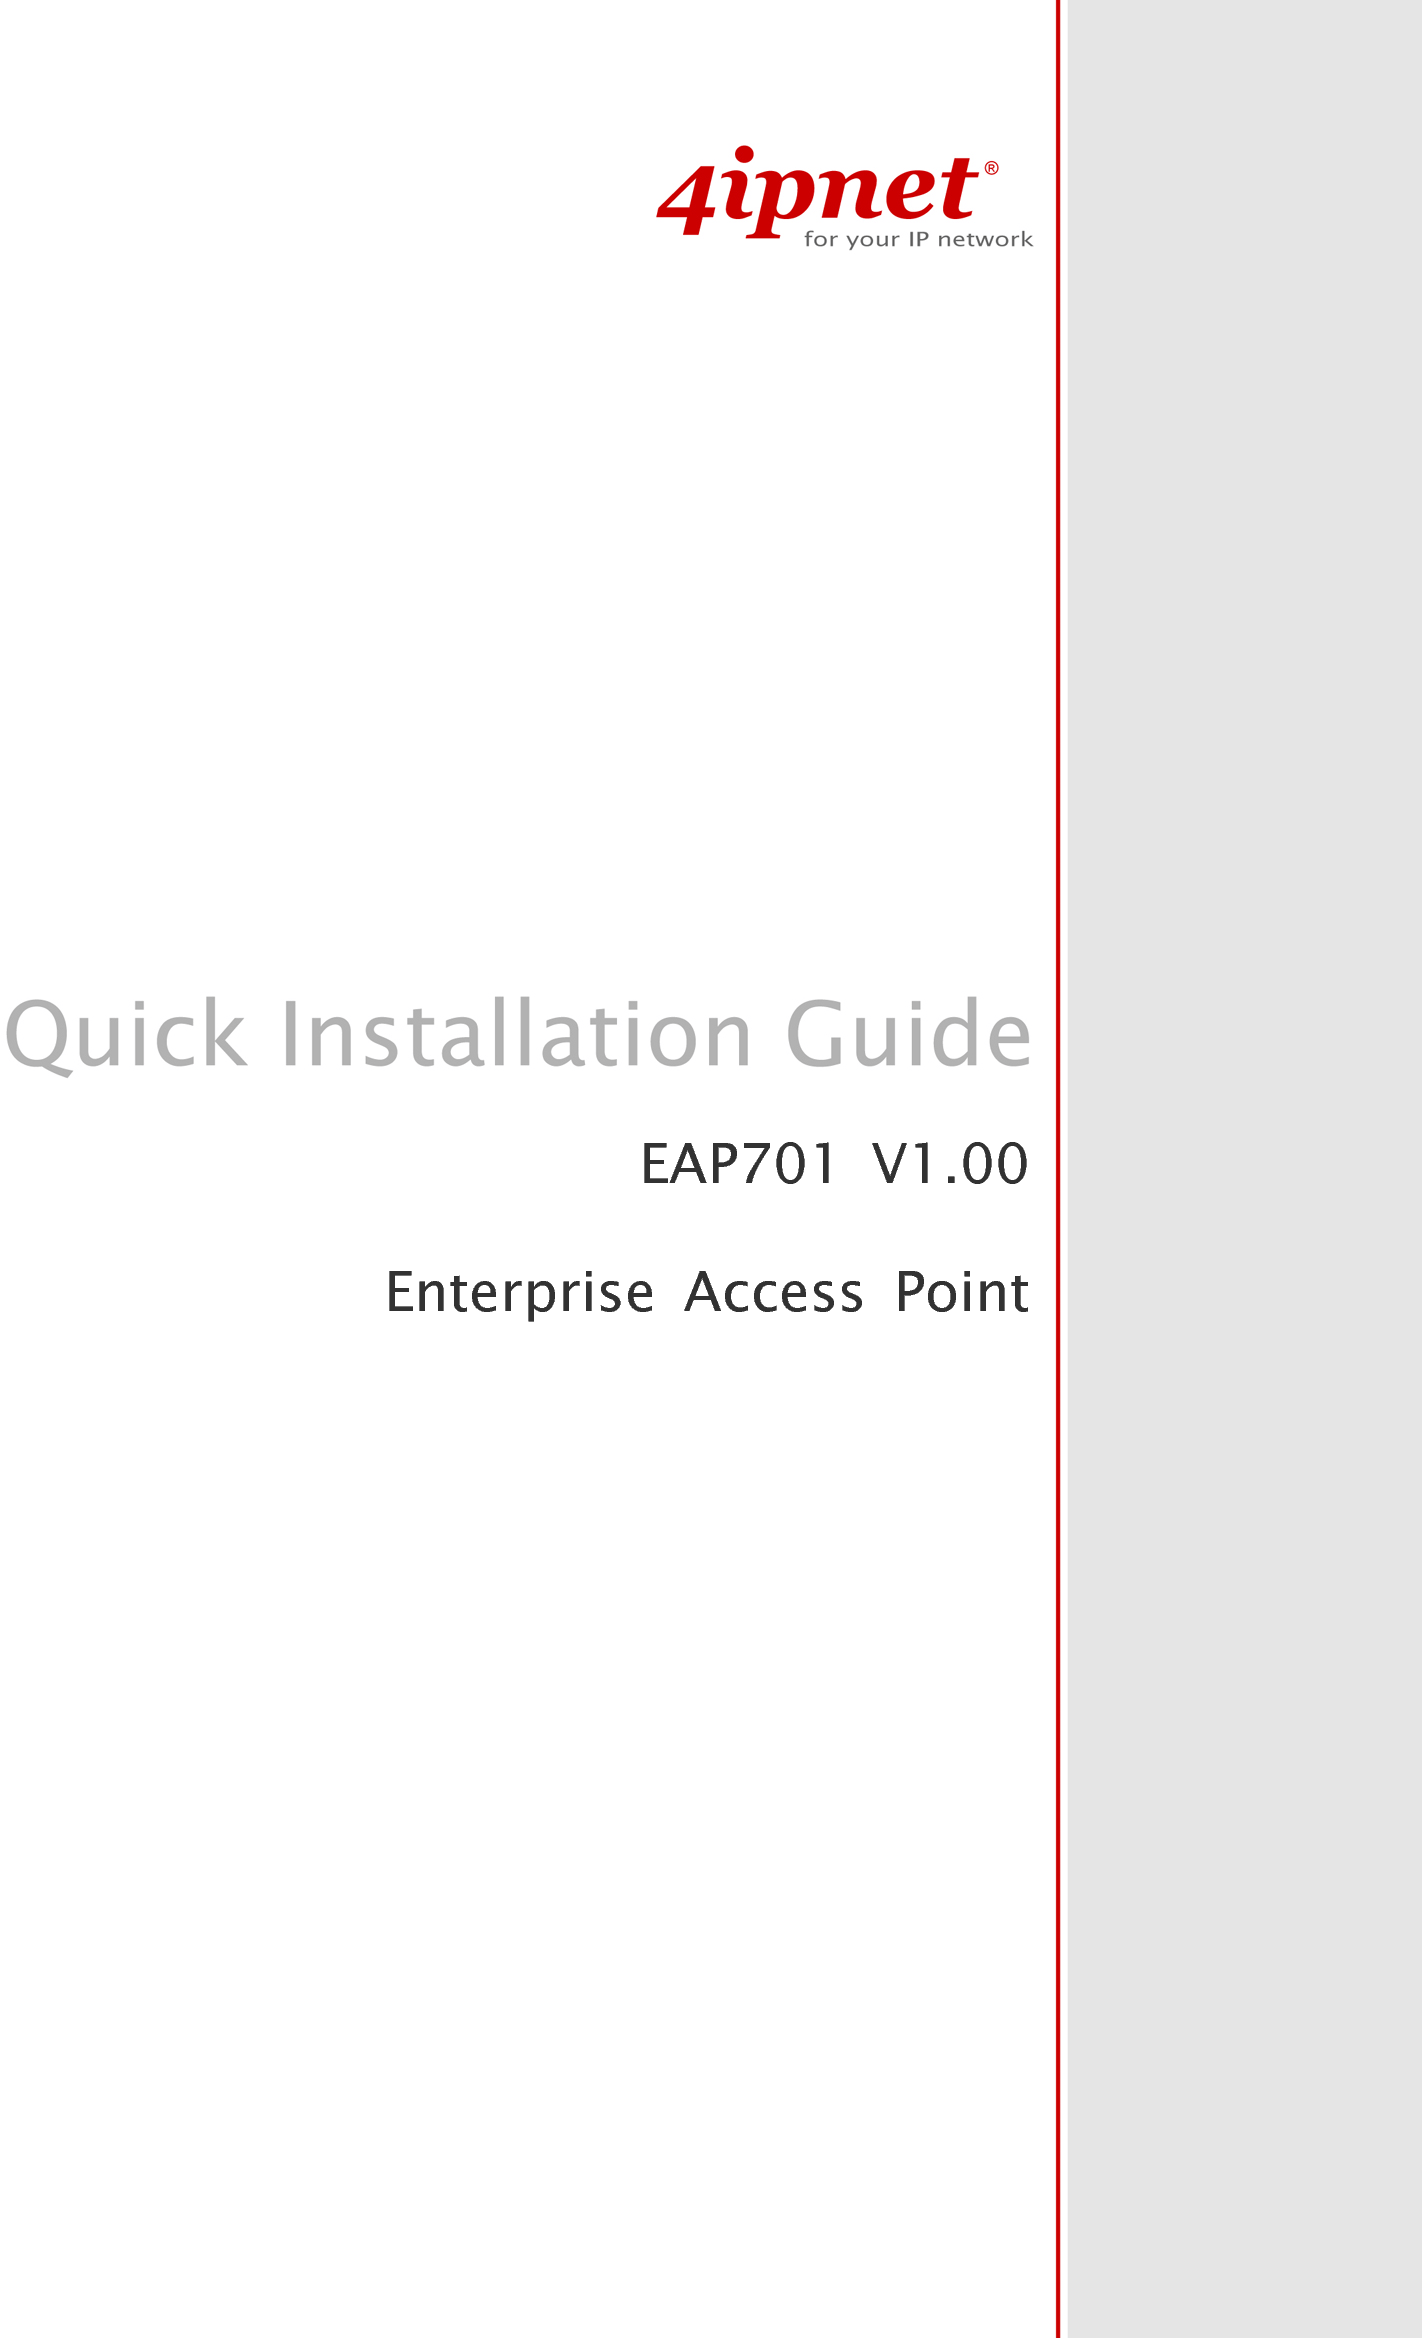   EAP701 V1.00Enterprise Access Point